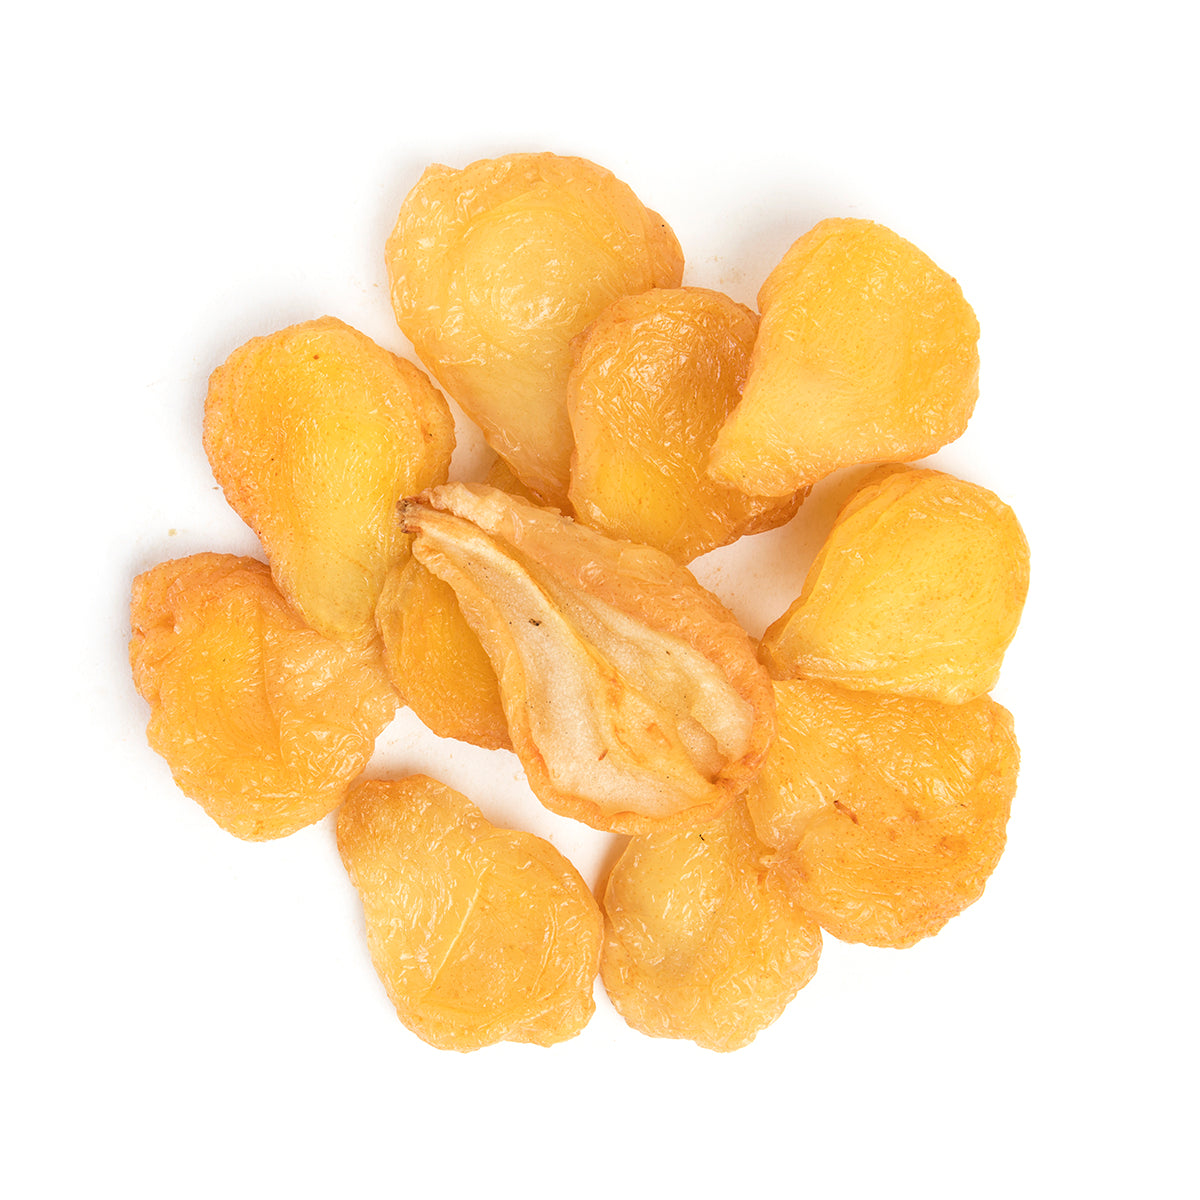 Bazzini Dried Jumbo Pears